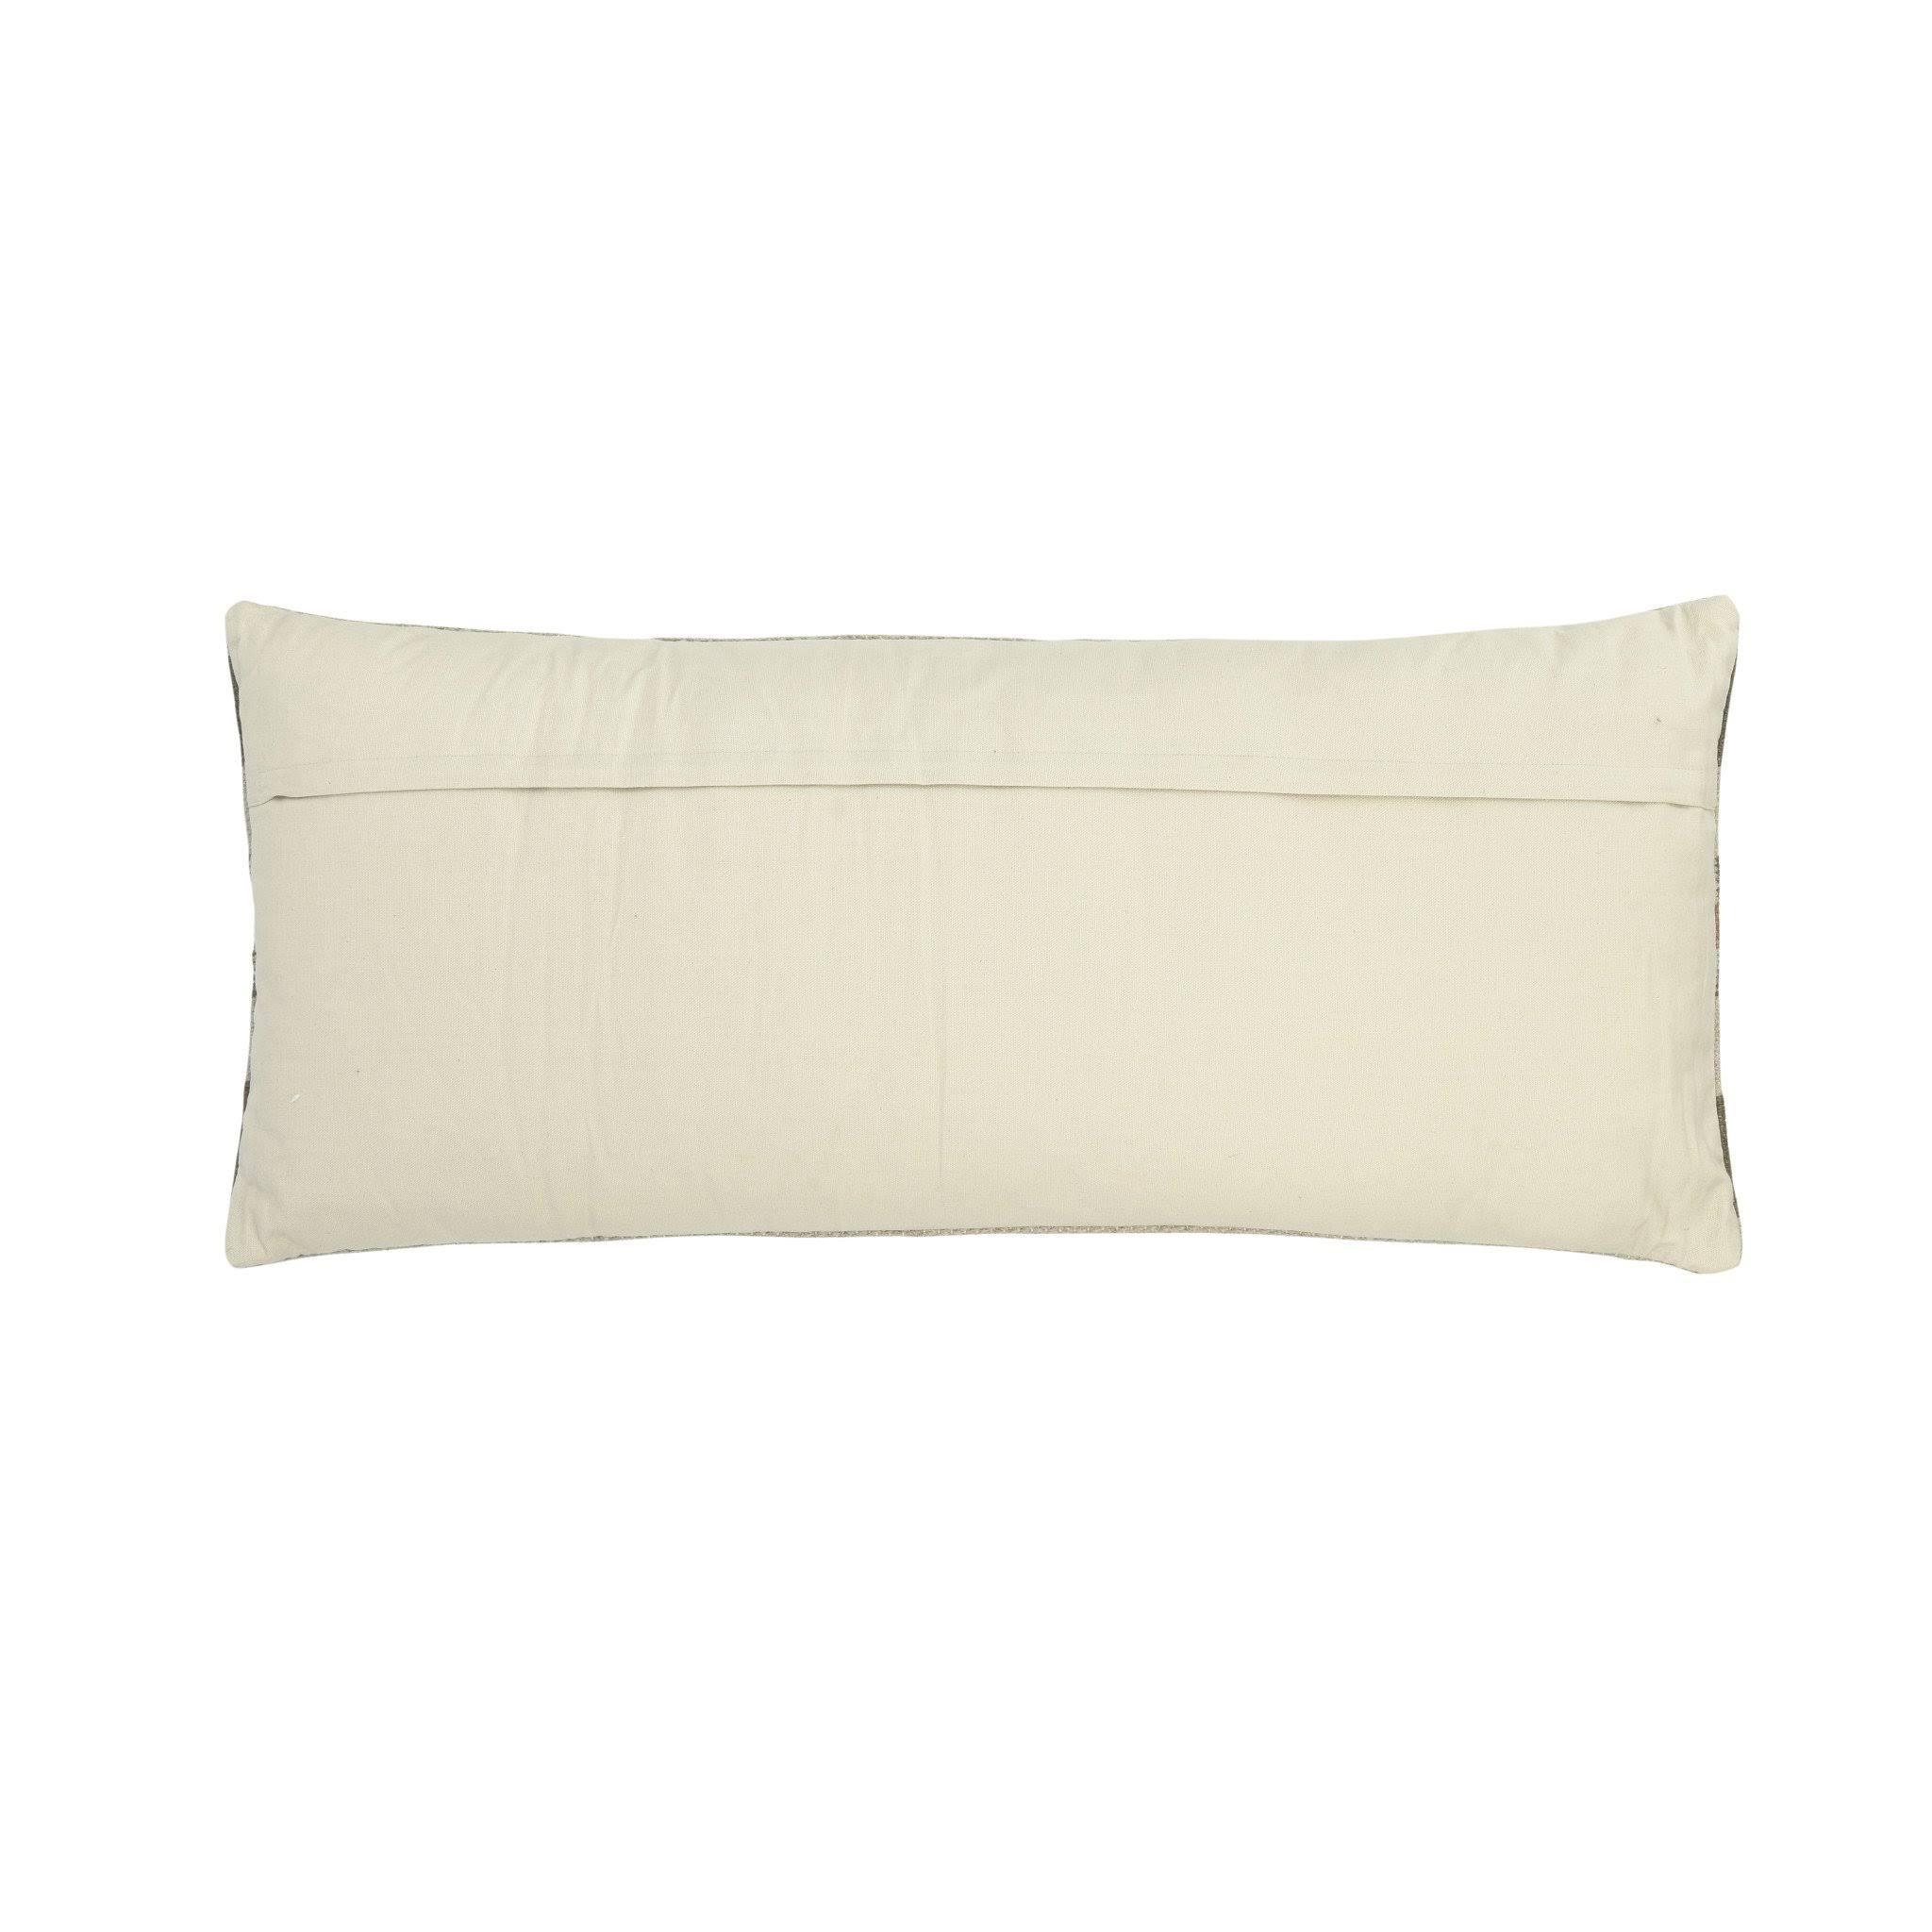 Sullivan Lumbar Pillow, 36" x 16" - Image 1